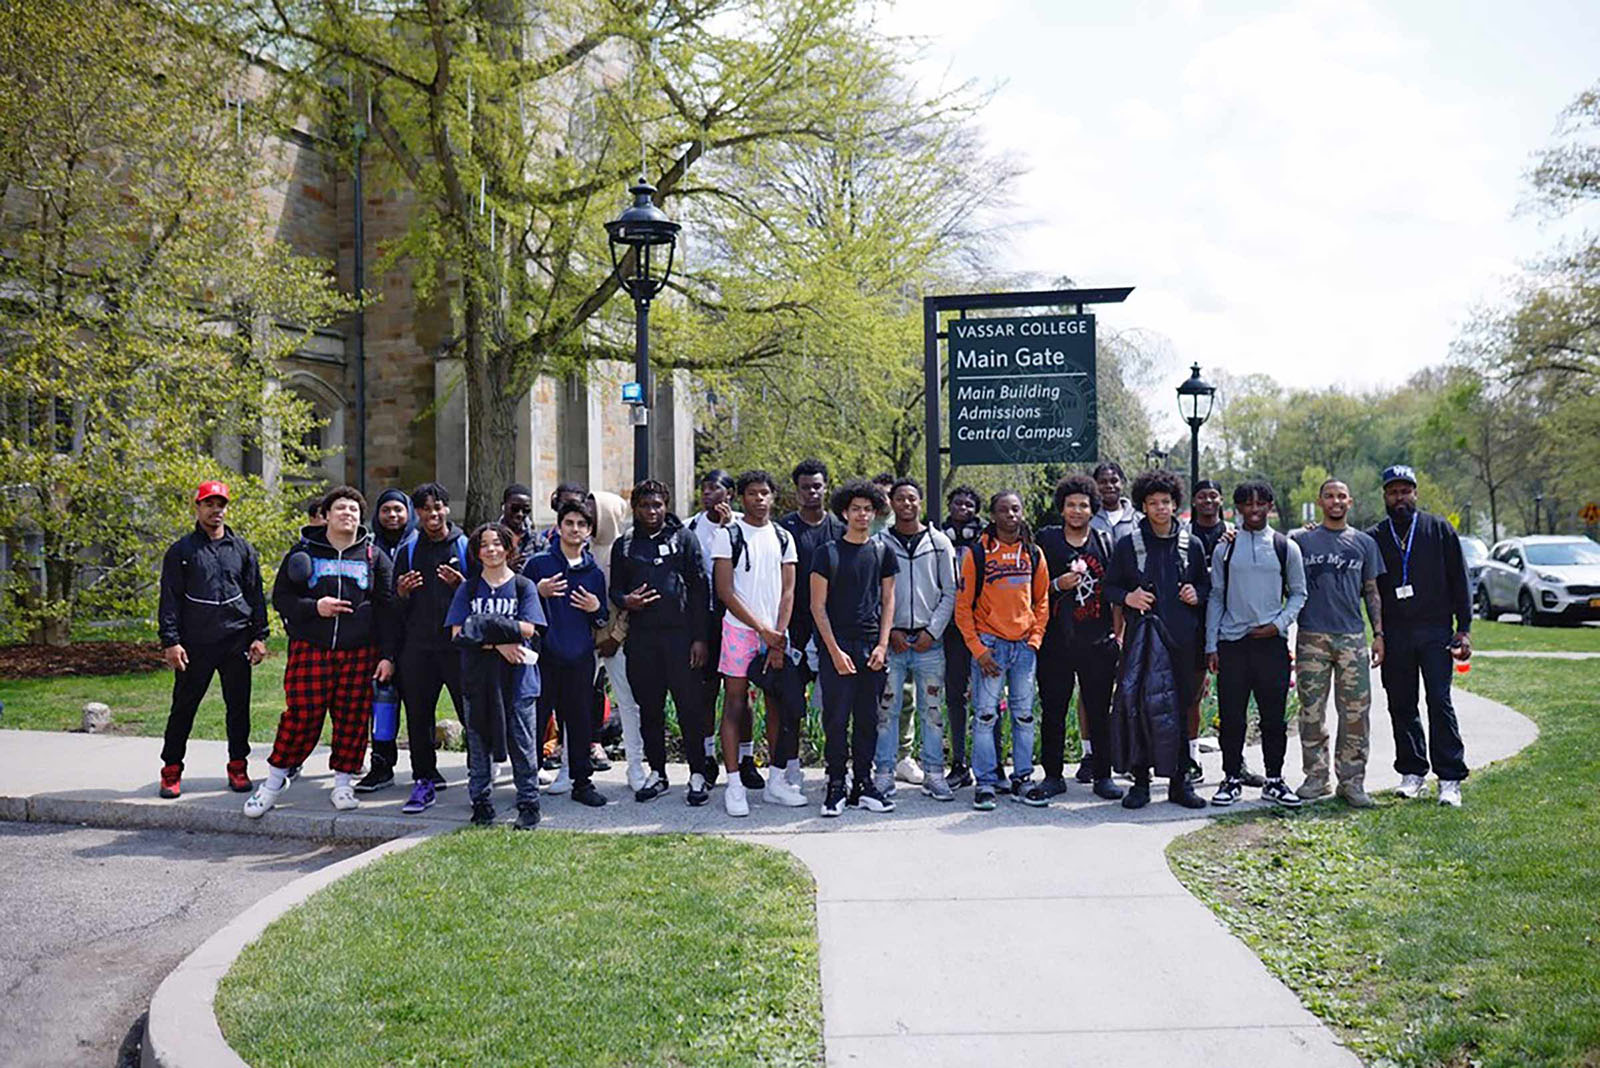 Brothers@ Mentorship Program Arrives at Vassar College